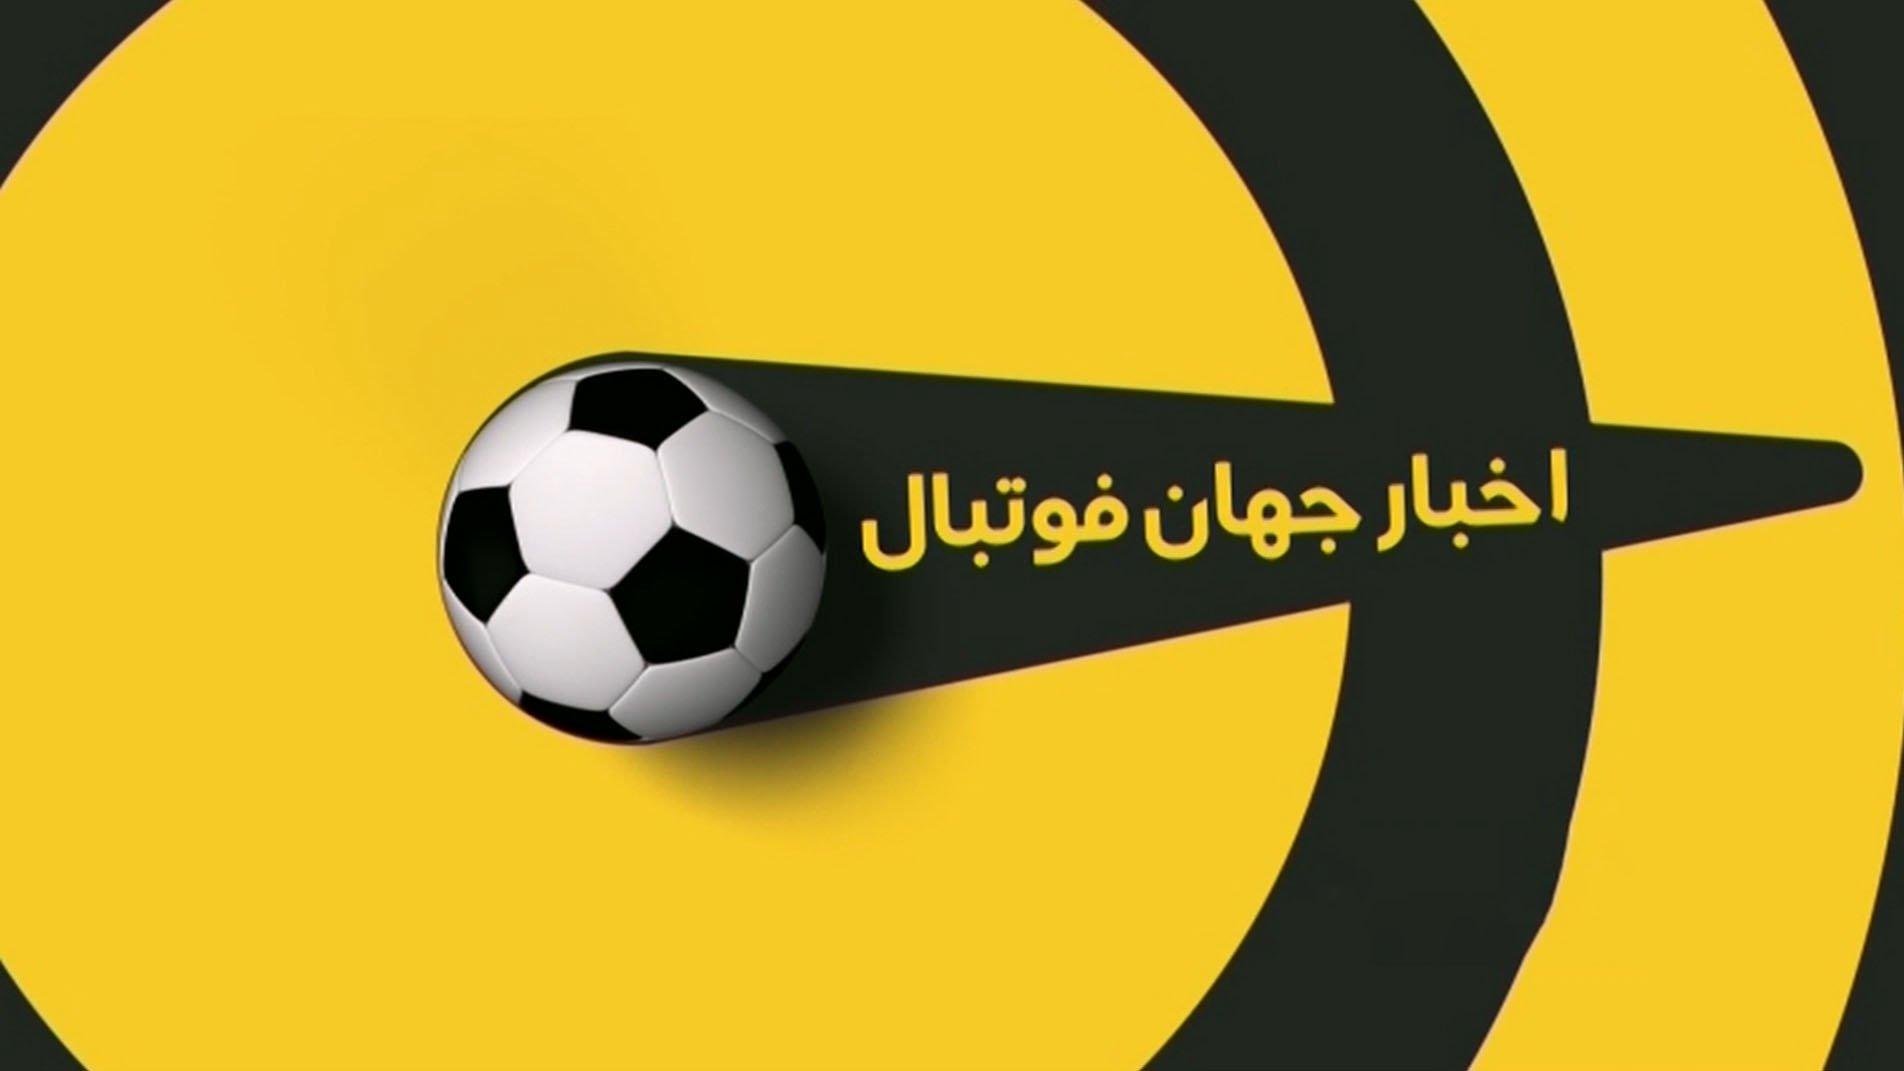 اخبار کوتاه فوتبال جهان ( 6 اردیبهشت 1400 ) + فیلم